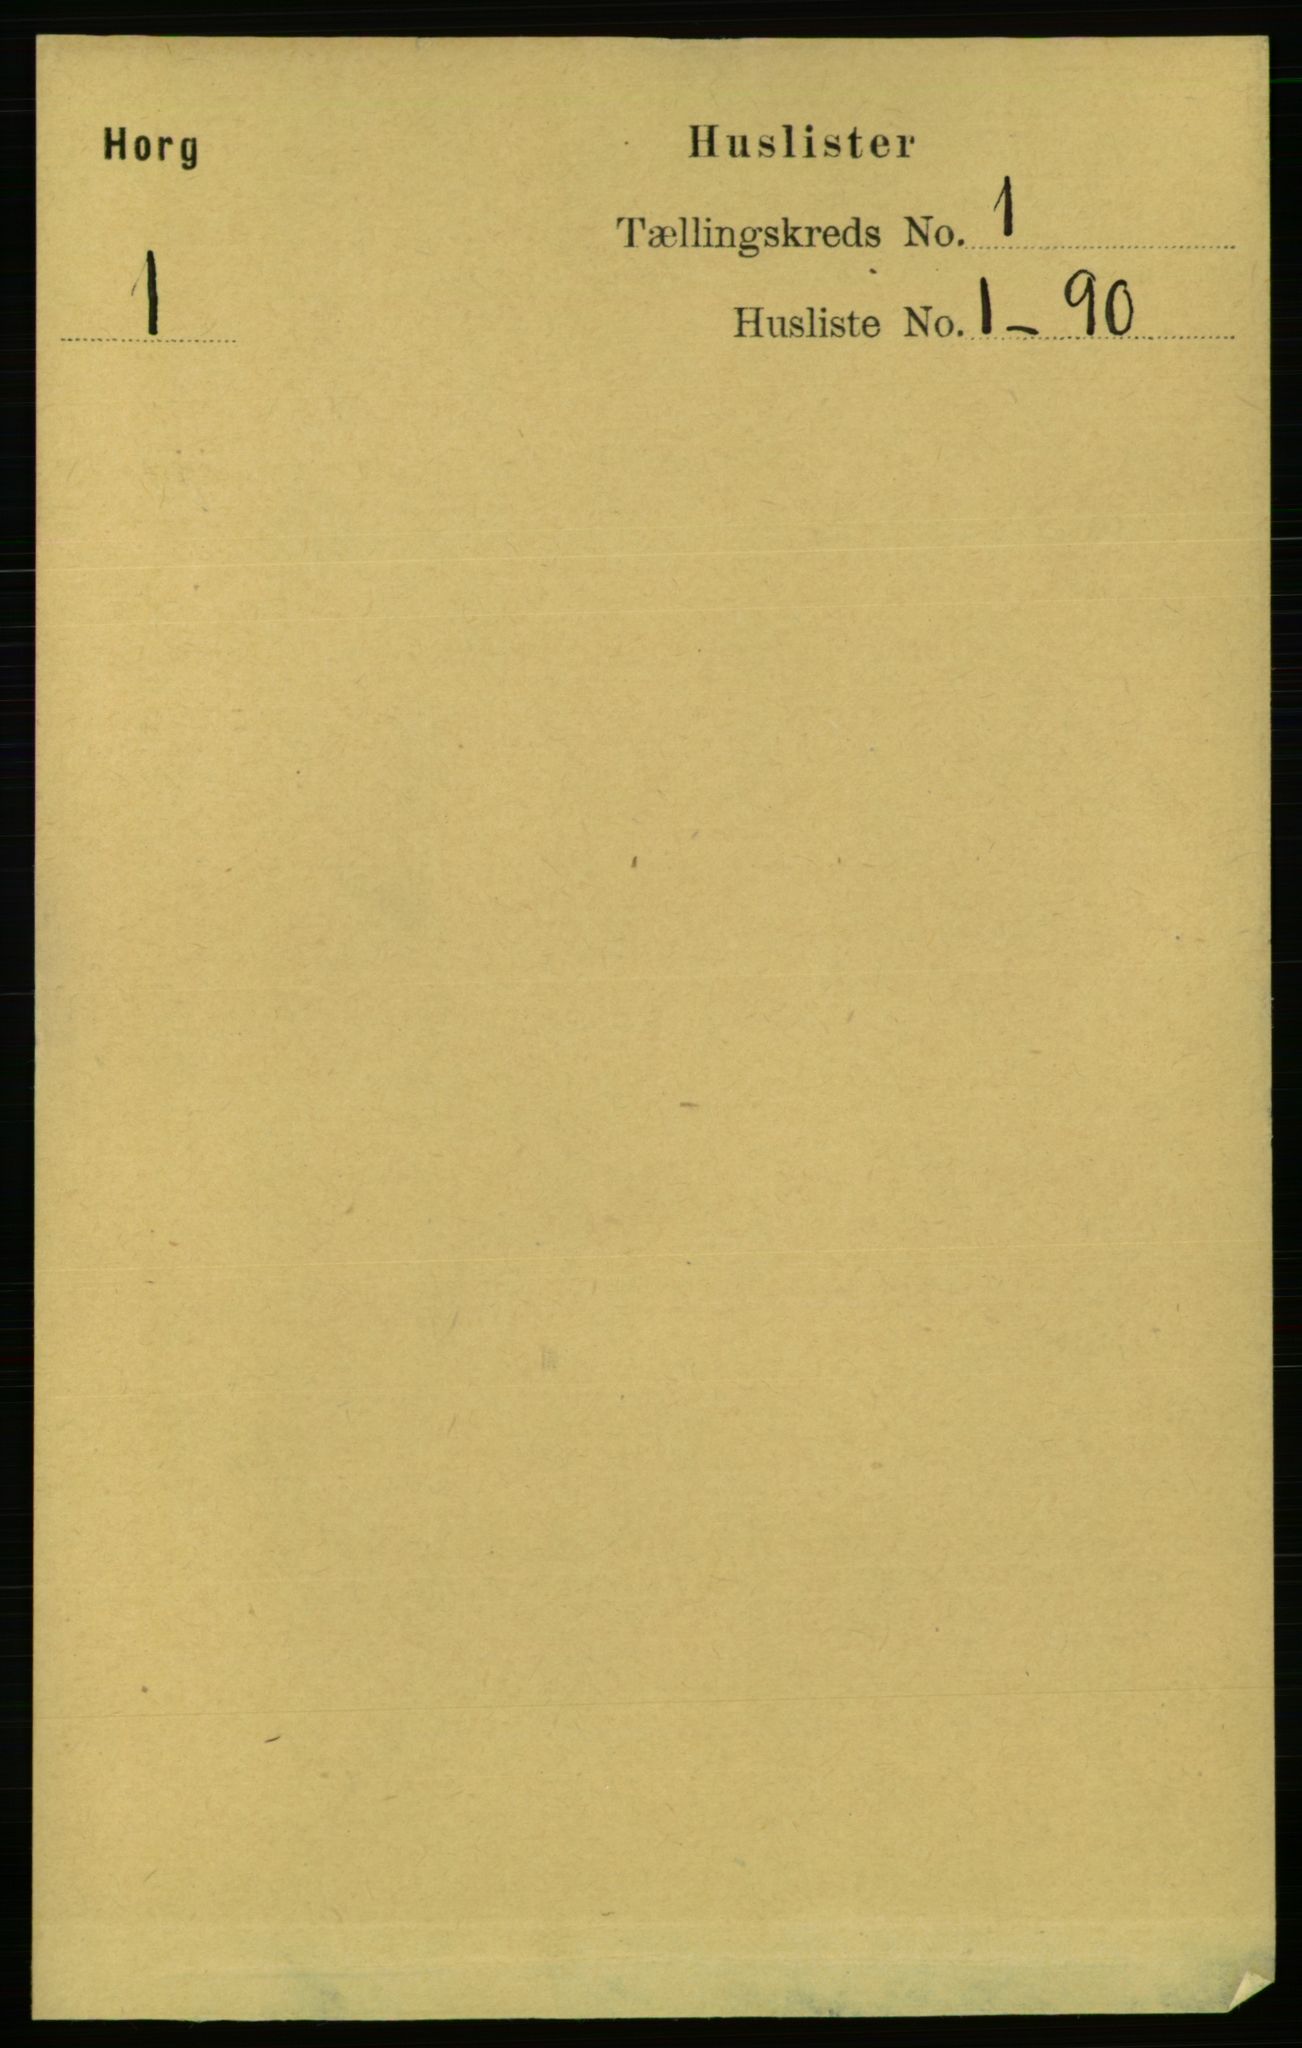 RA, Folketelling 1891 for 1650 Horg herred, 1891, s. 17